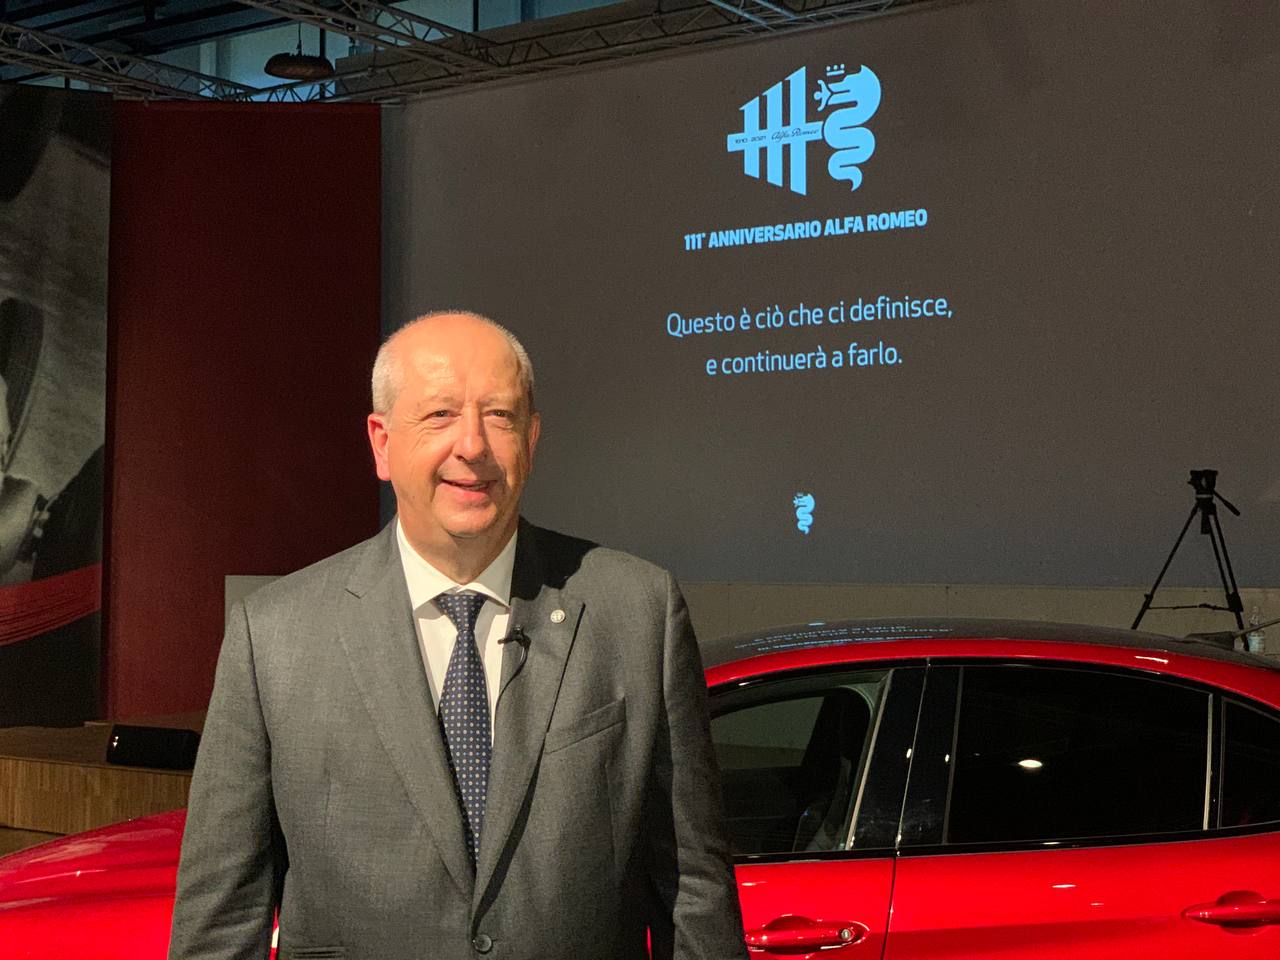 Jean-Philippe Imparato Alfa Romeo 111 anni